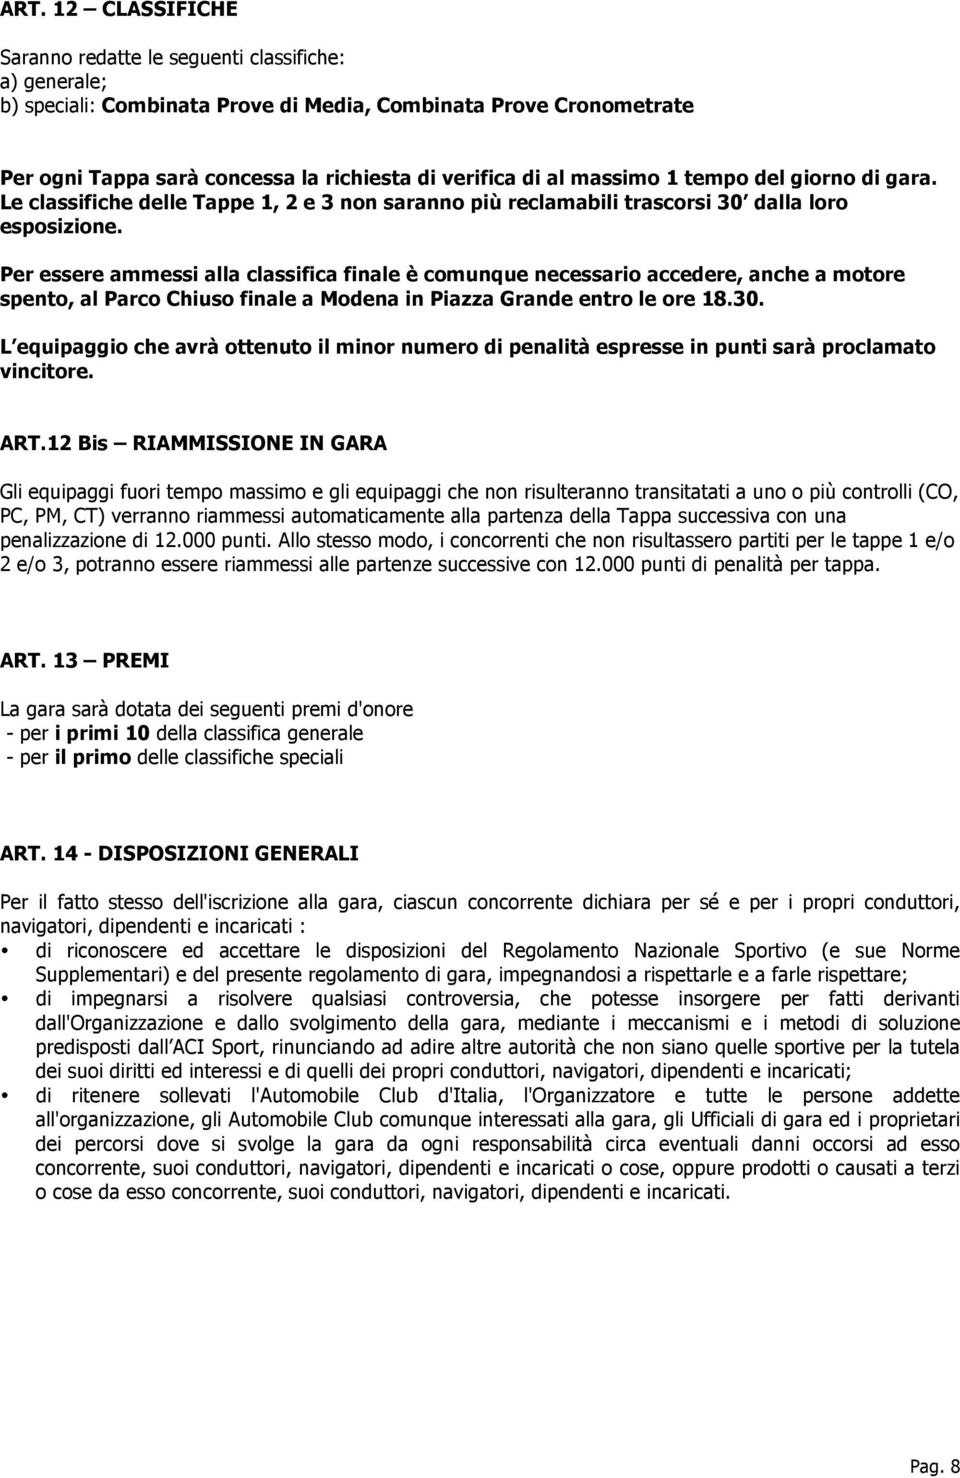 Per essere ammessi alla classifica finale è comunque necessario accedere, anche a motore spento, al Parco Chiuso finale a Modena in Piazza Grande entro le ore 18.30.